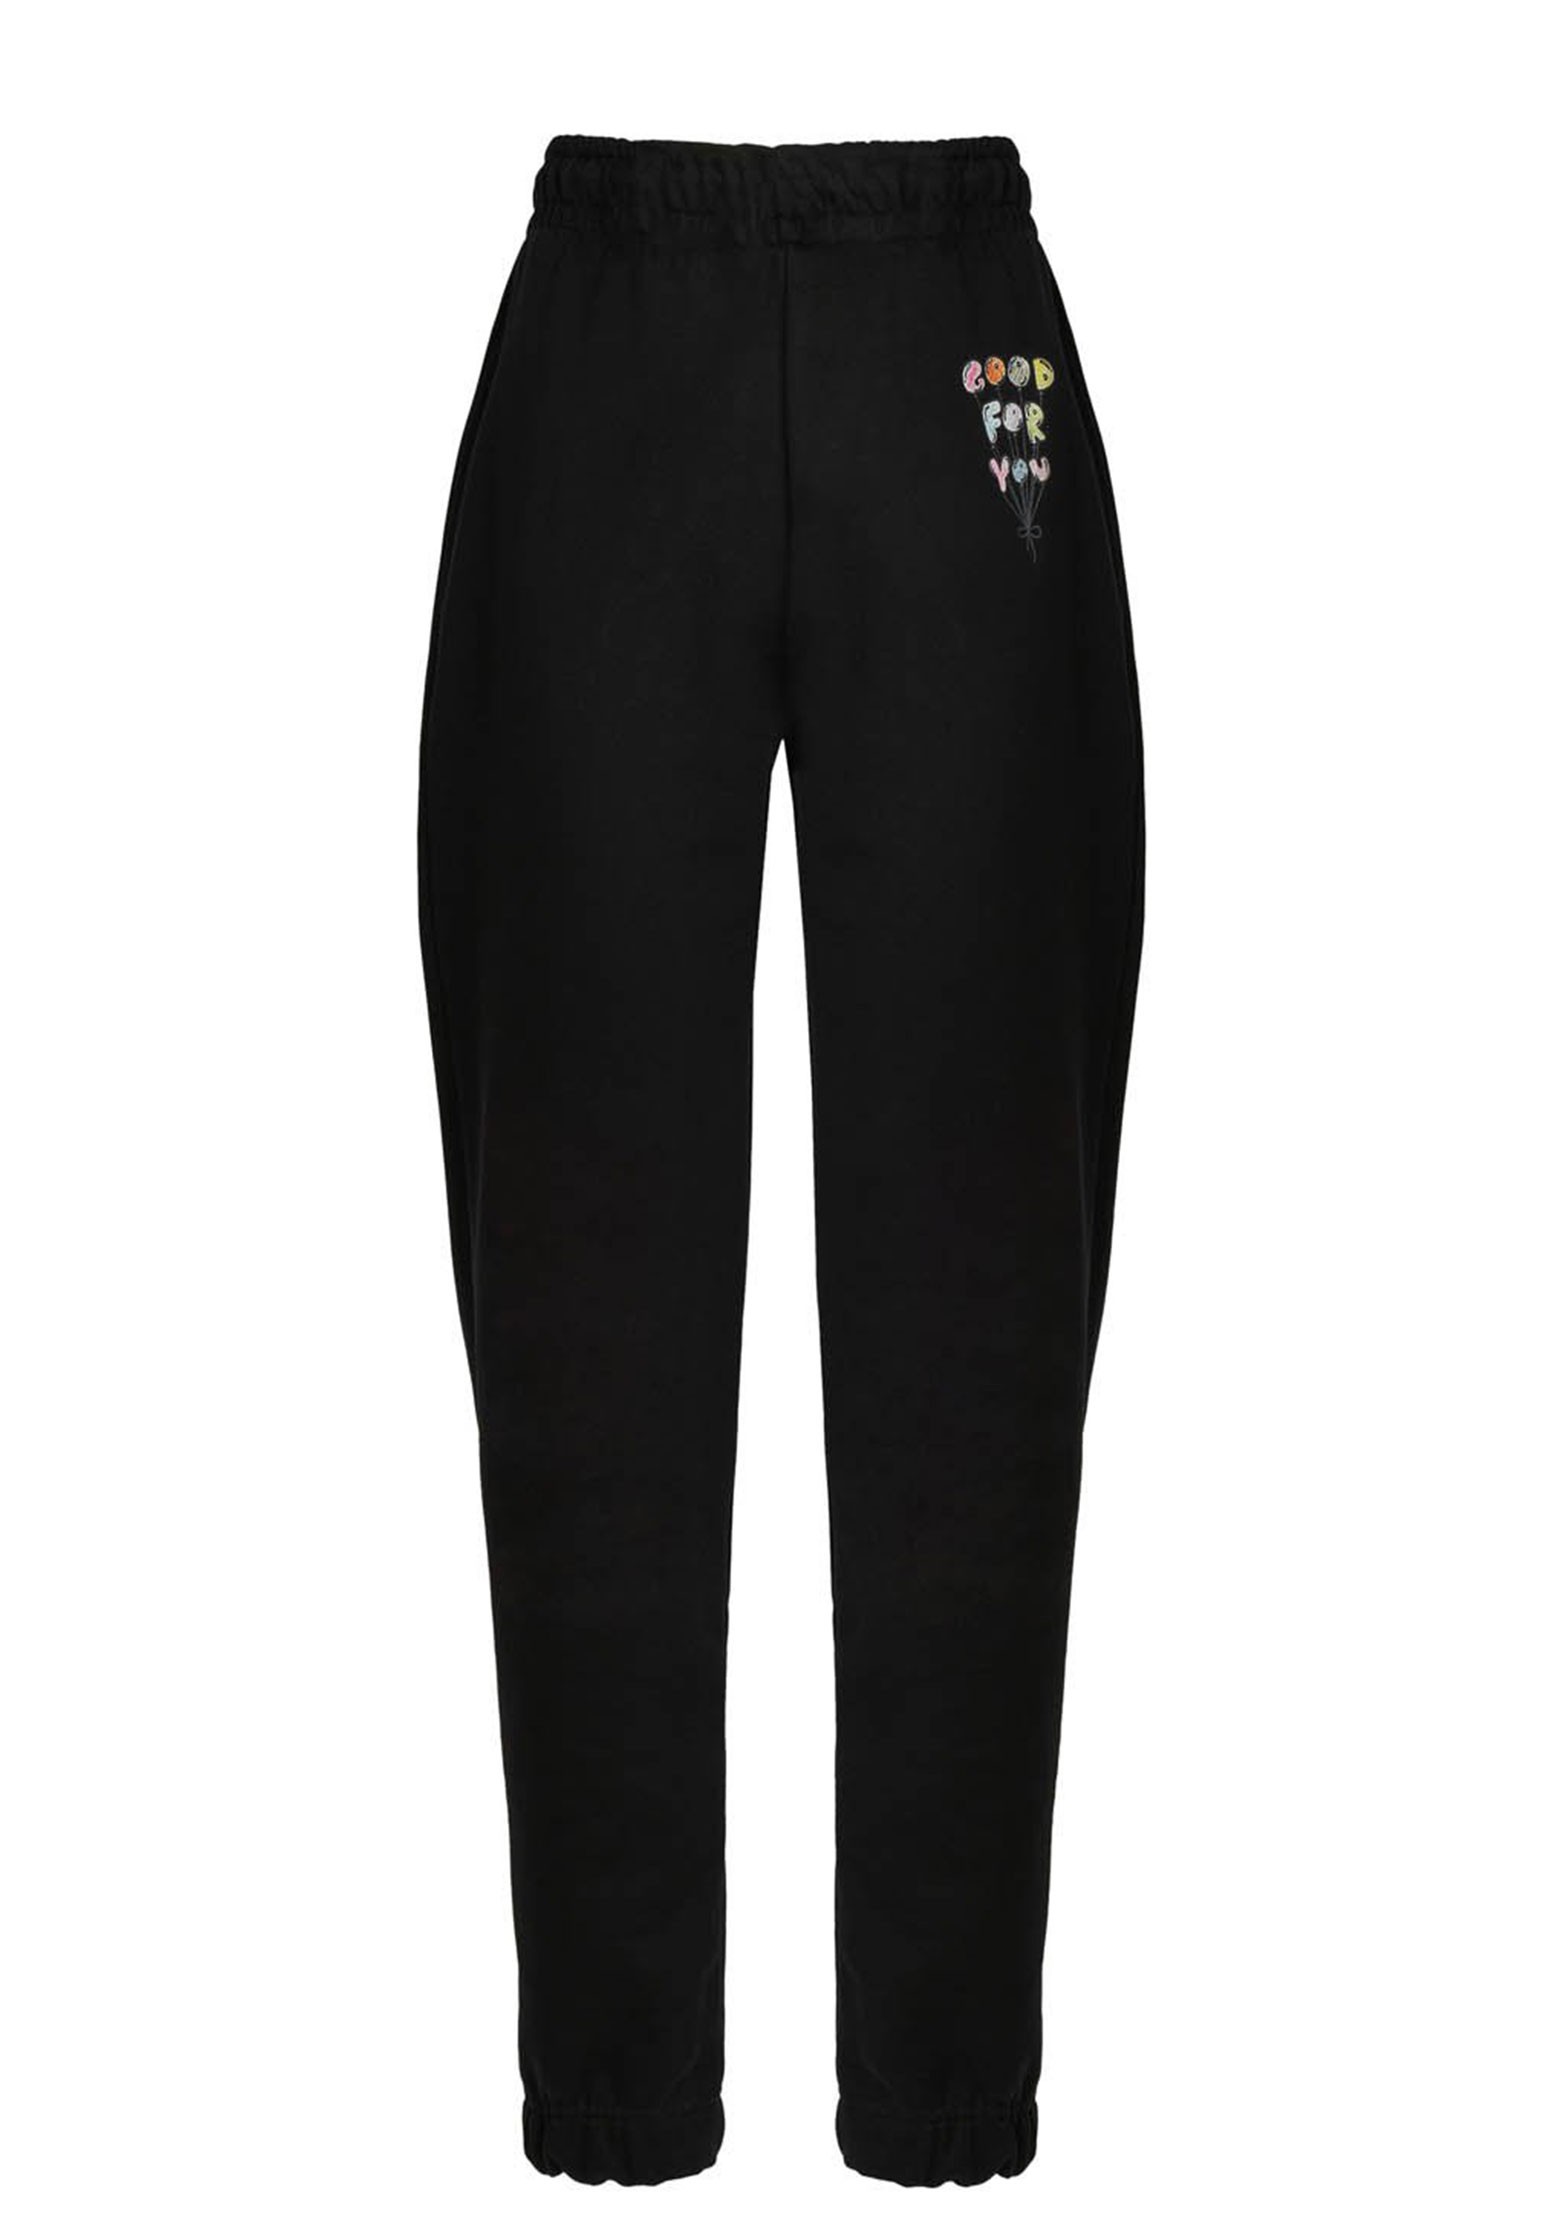 Спортивные брюки женские IRENEISGOOD 131161 черные S